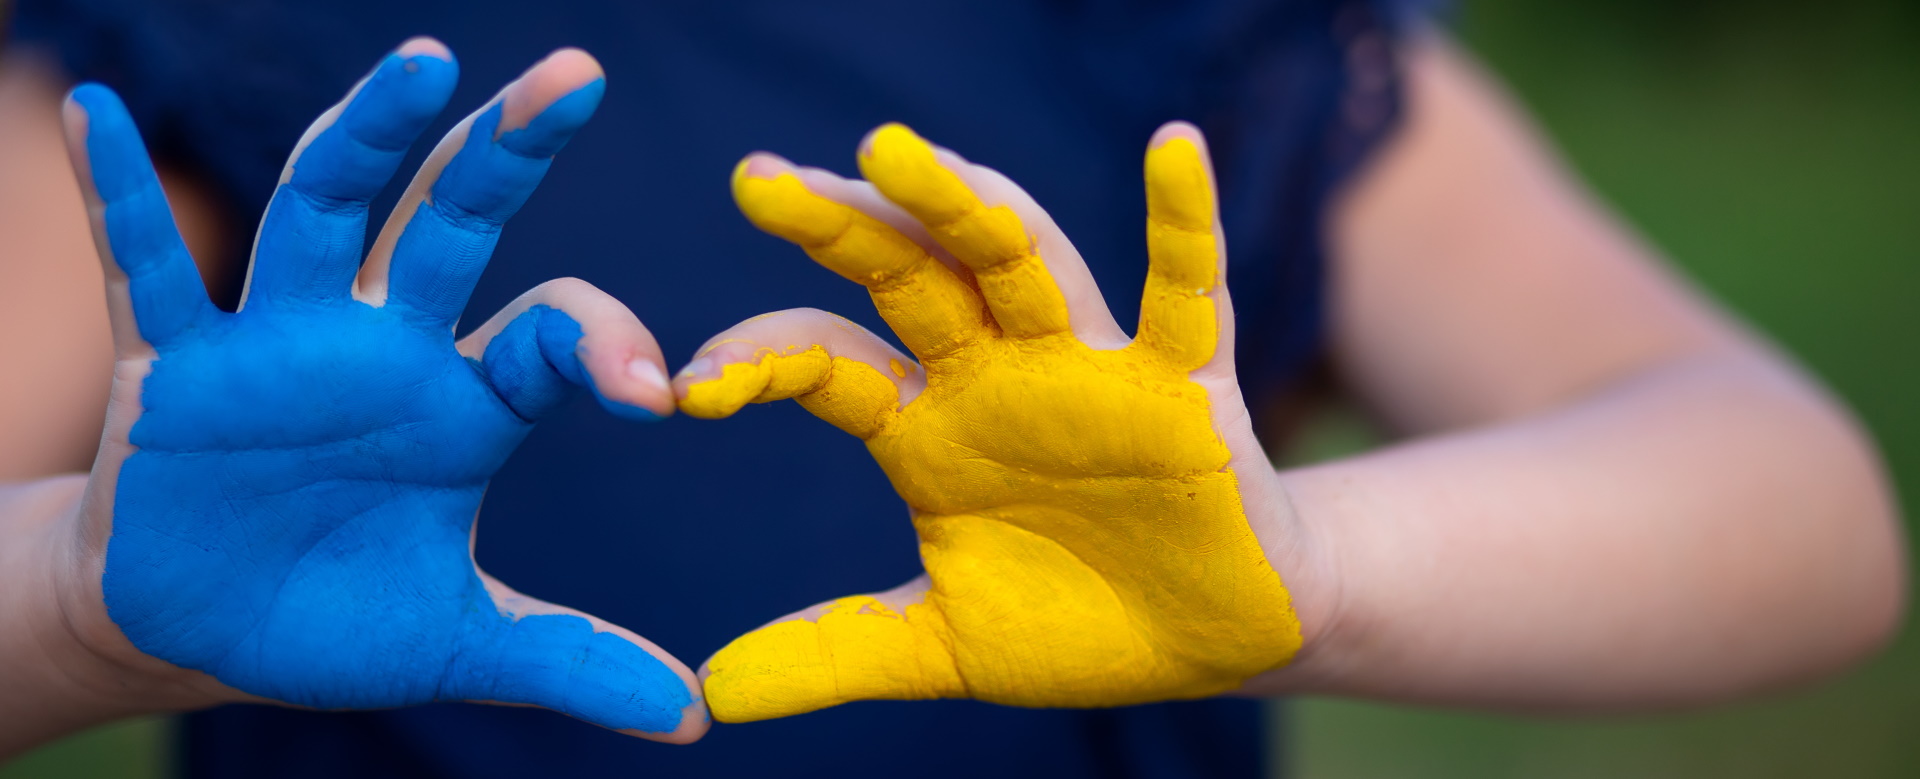 Symbolbild Hilfe für die Ukraine. Zwei Hände, die blau und gelb angemalt sind, formen ein Herz.